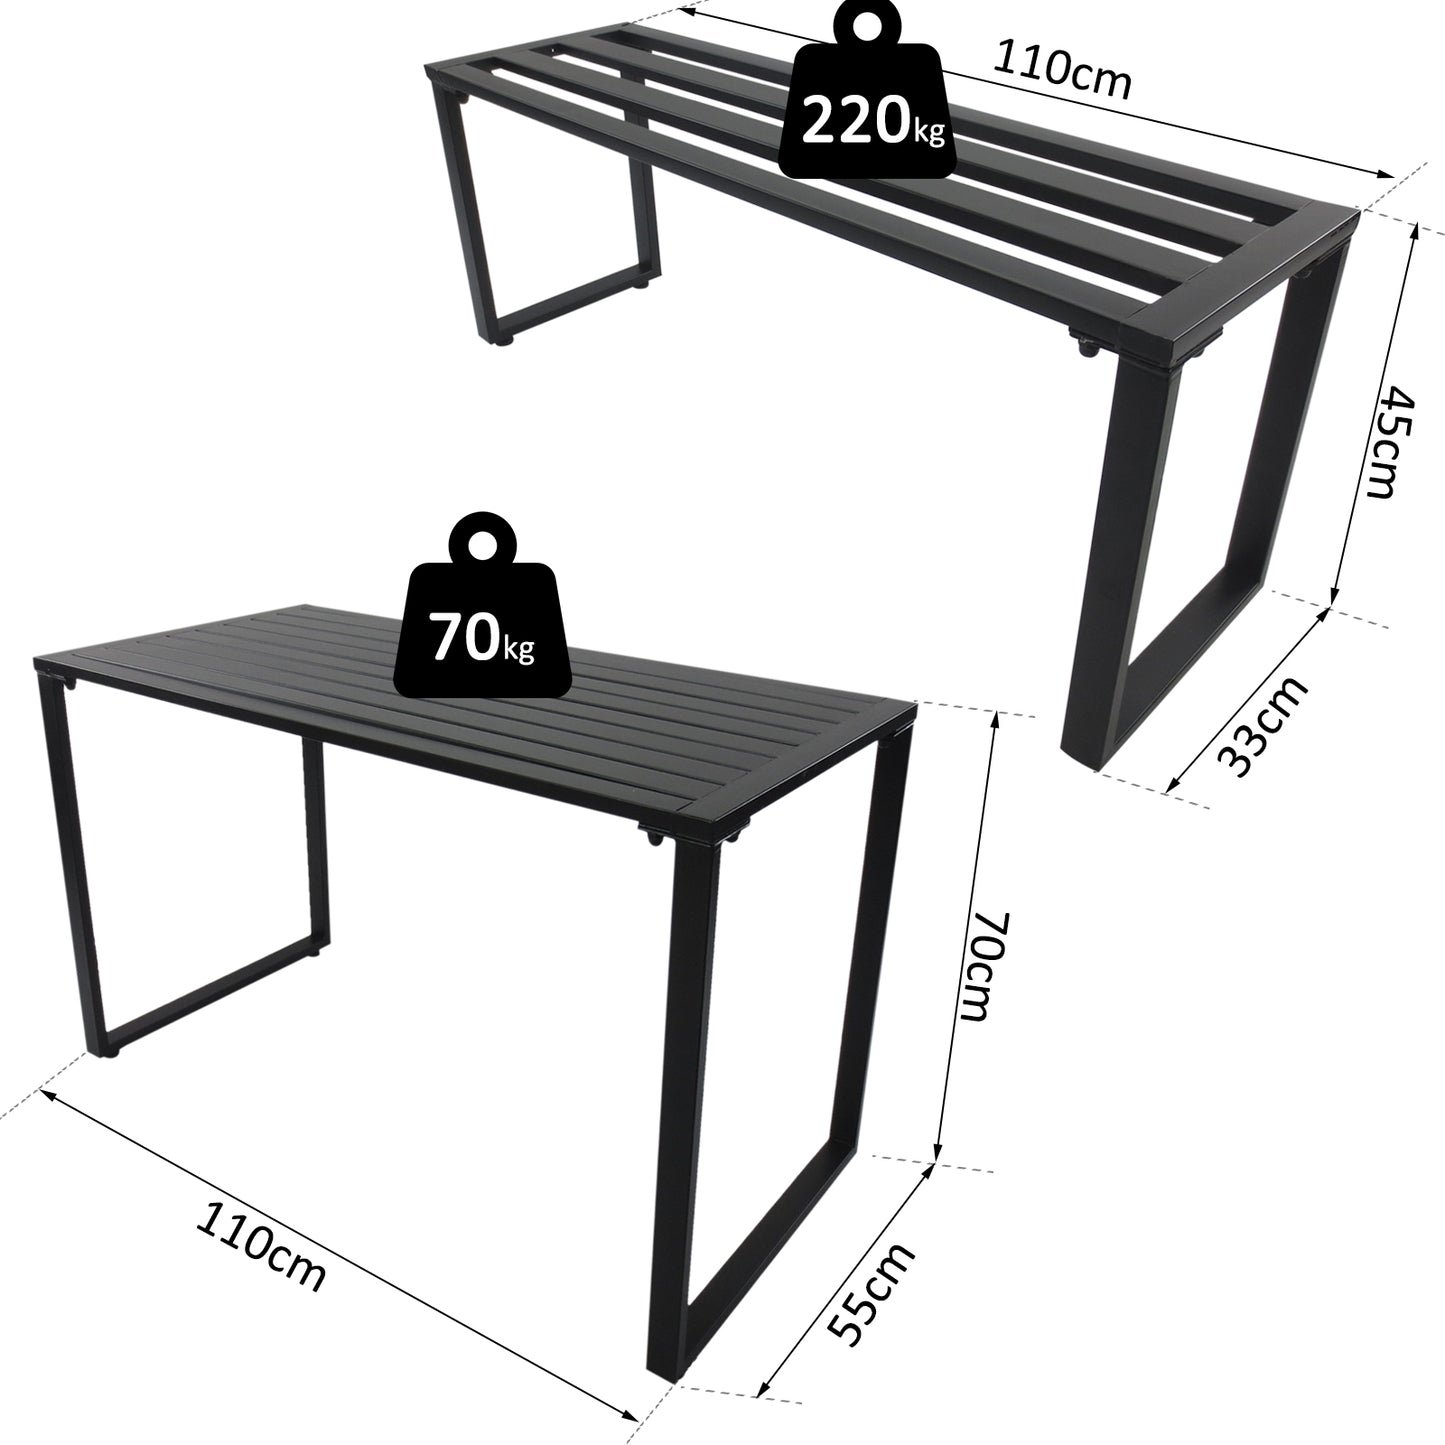 Outsunny 3 Pcs Metal Table W/Bench Set-Black